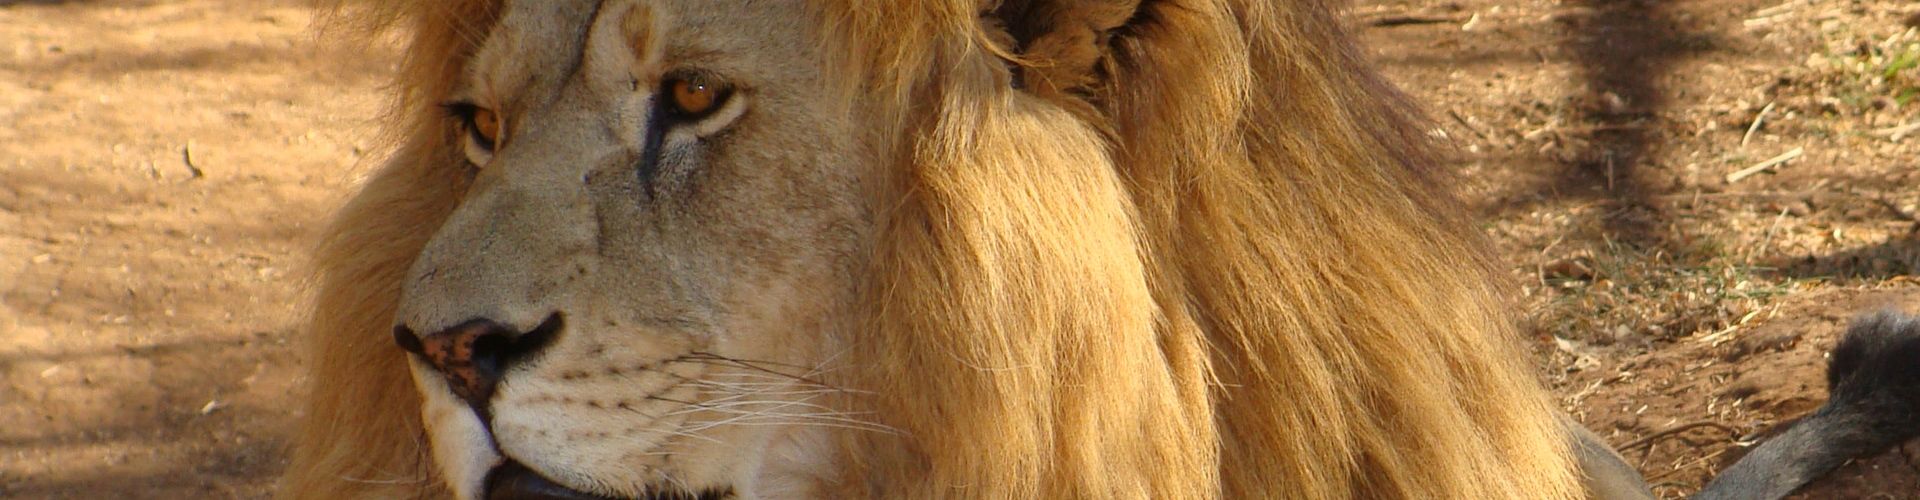 Un leone maschio più anziano con cicatrici e una criniera imponente